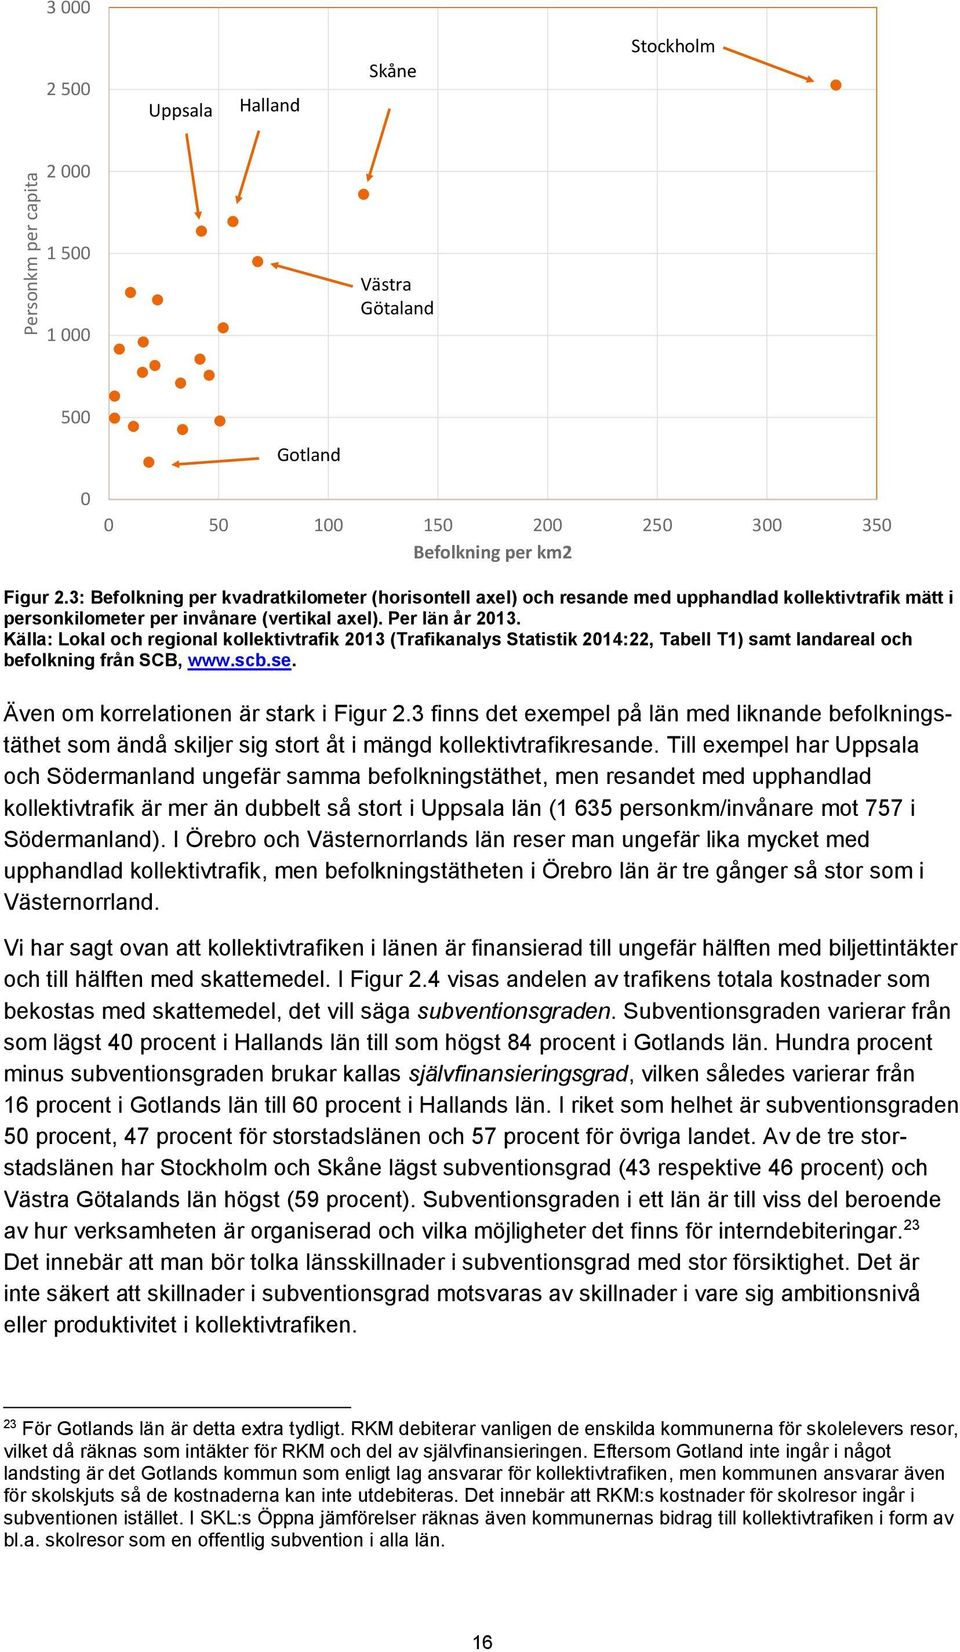 Källa: Lokal och regional kollektivtrafik 2013 (Trafikanalys Statistik 2014:22, Tabell T1) samt landareal och befolkning från SCB, www.scb.se. Även om korrelationen är stark i Figur 2.